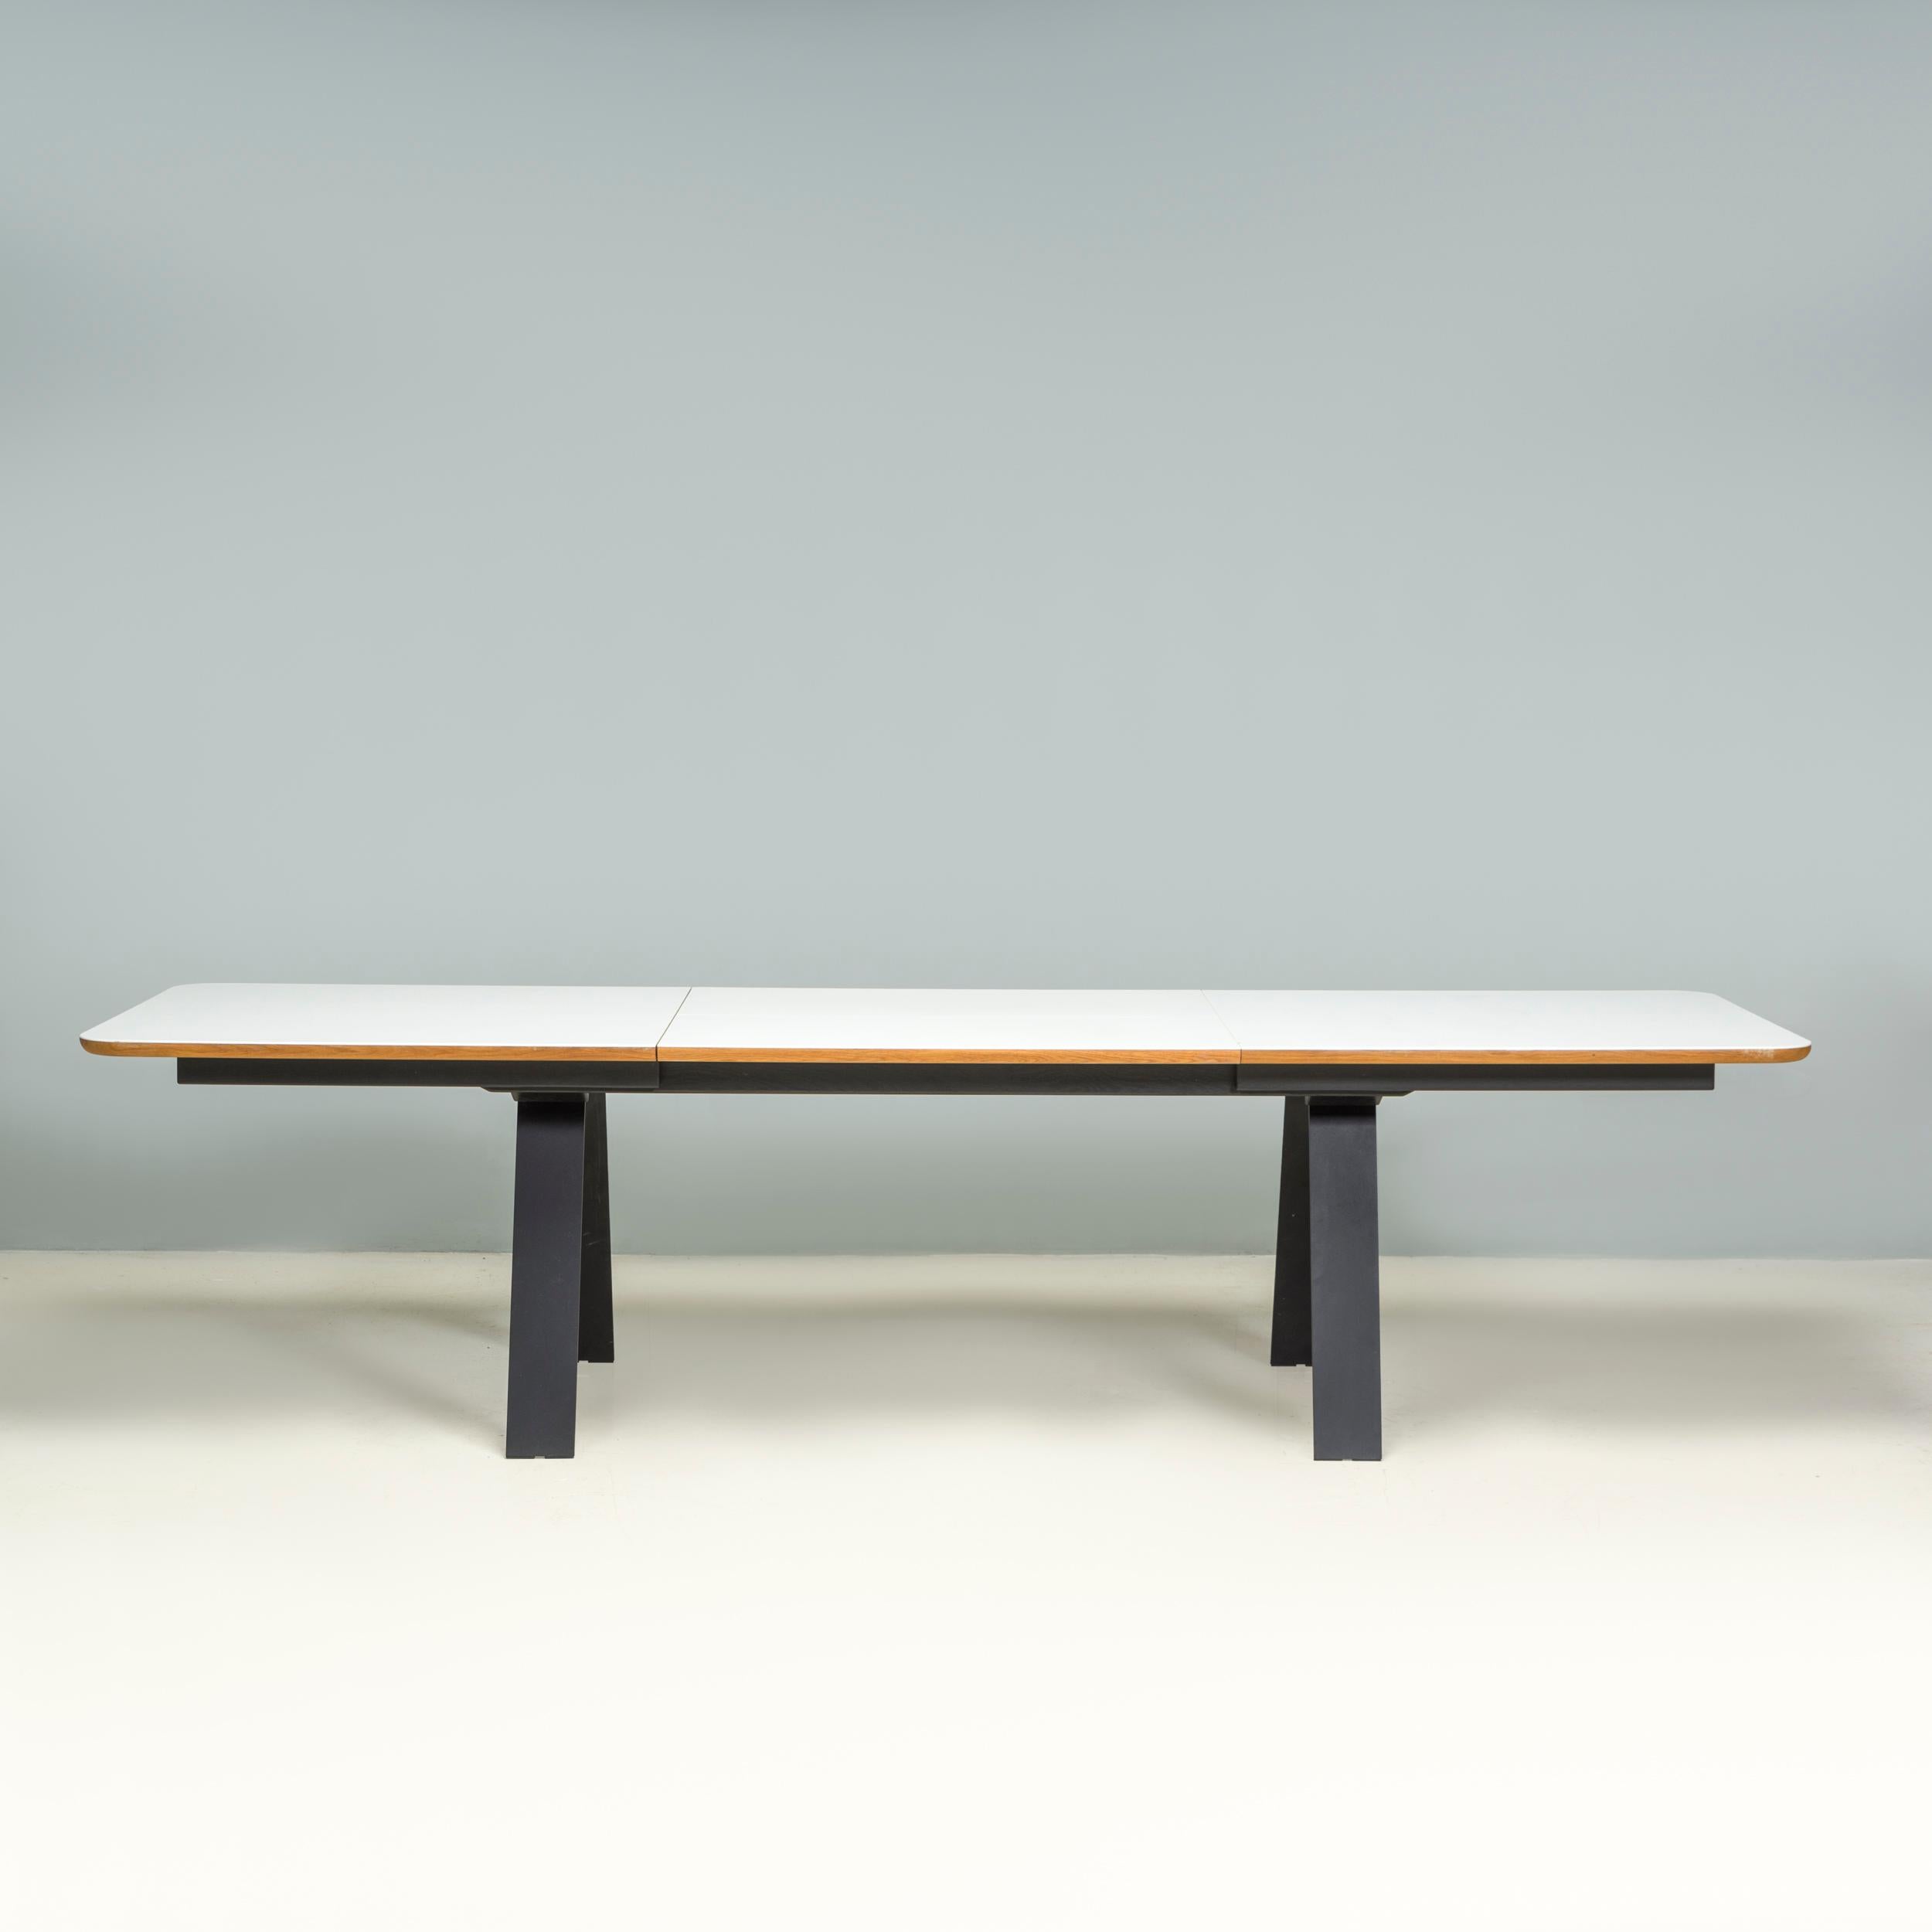 Conçue par Ebbe Gehl et Søren Nissen pour Naver, cette table à manger Chess a été fabriquée au Danemark en 2018.

La table de salle à manger a un grand plateau rectangulaire aux coins arrondis en Corian blanc avec une finition contrastée en noyer